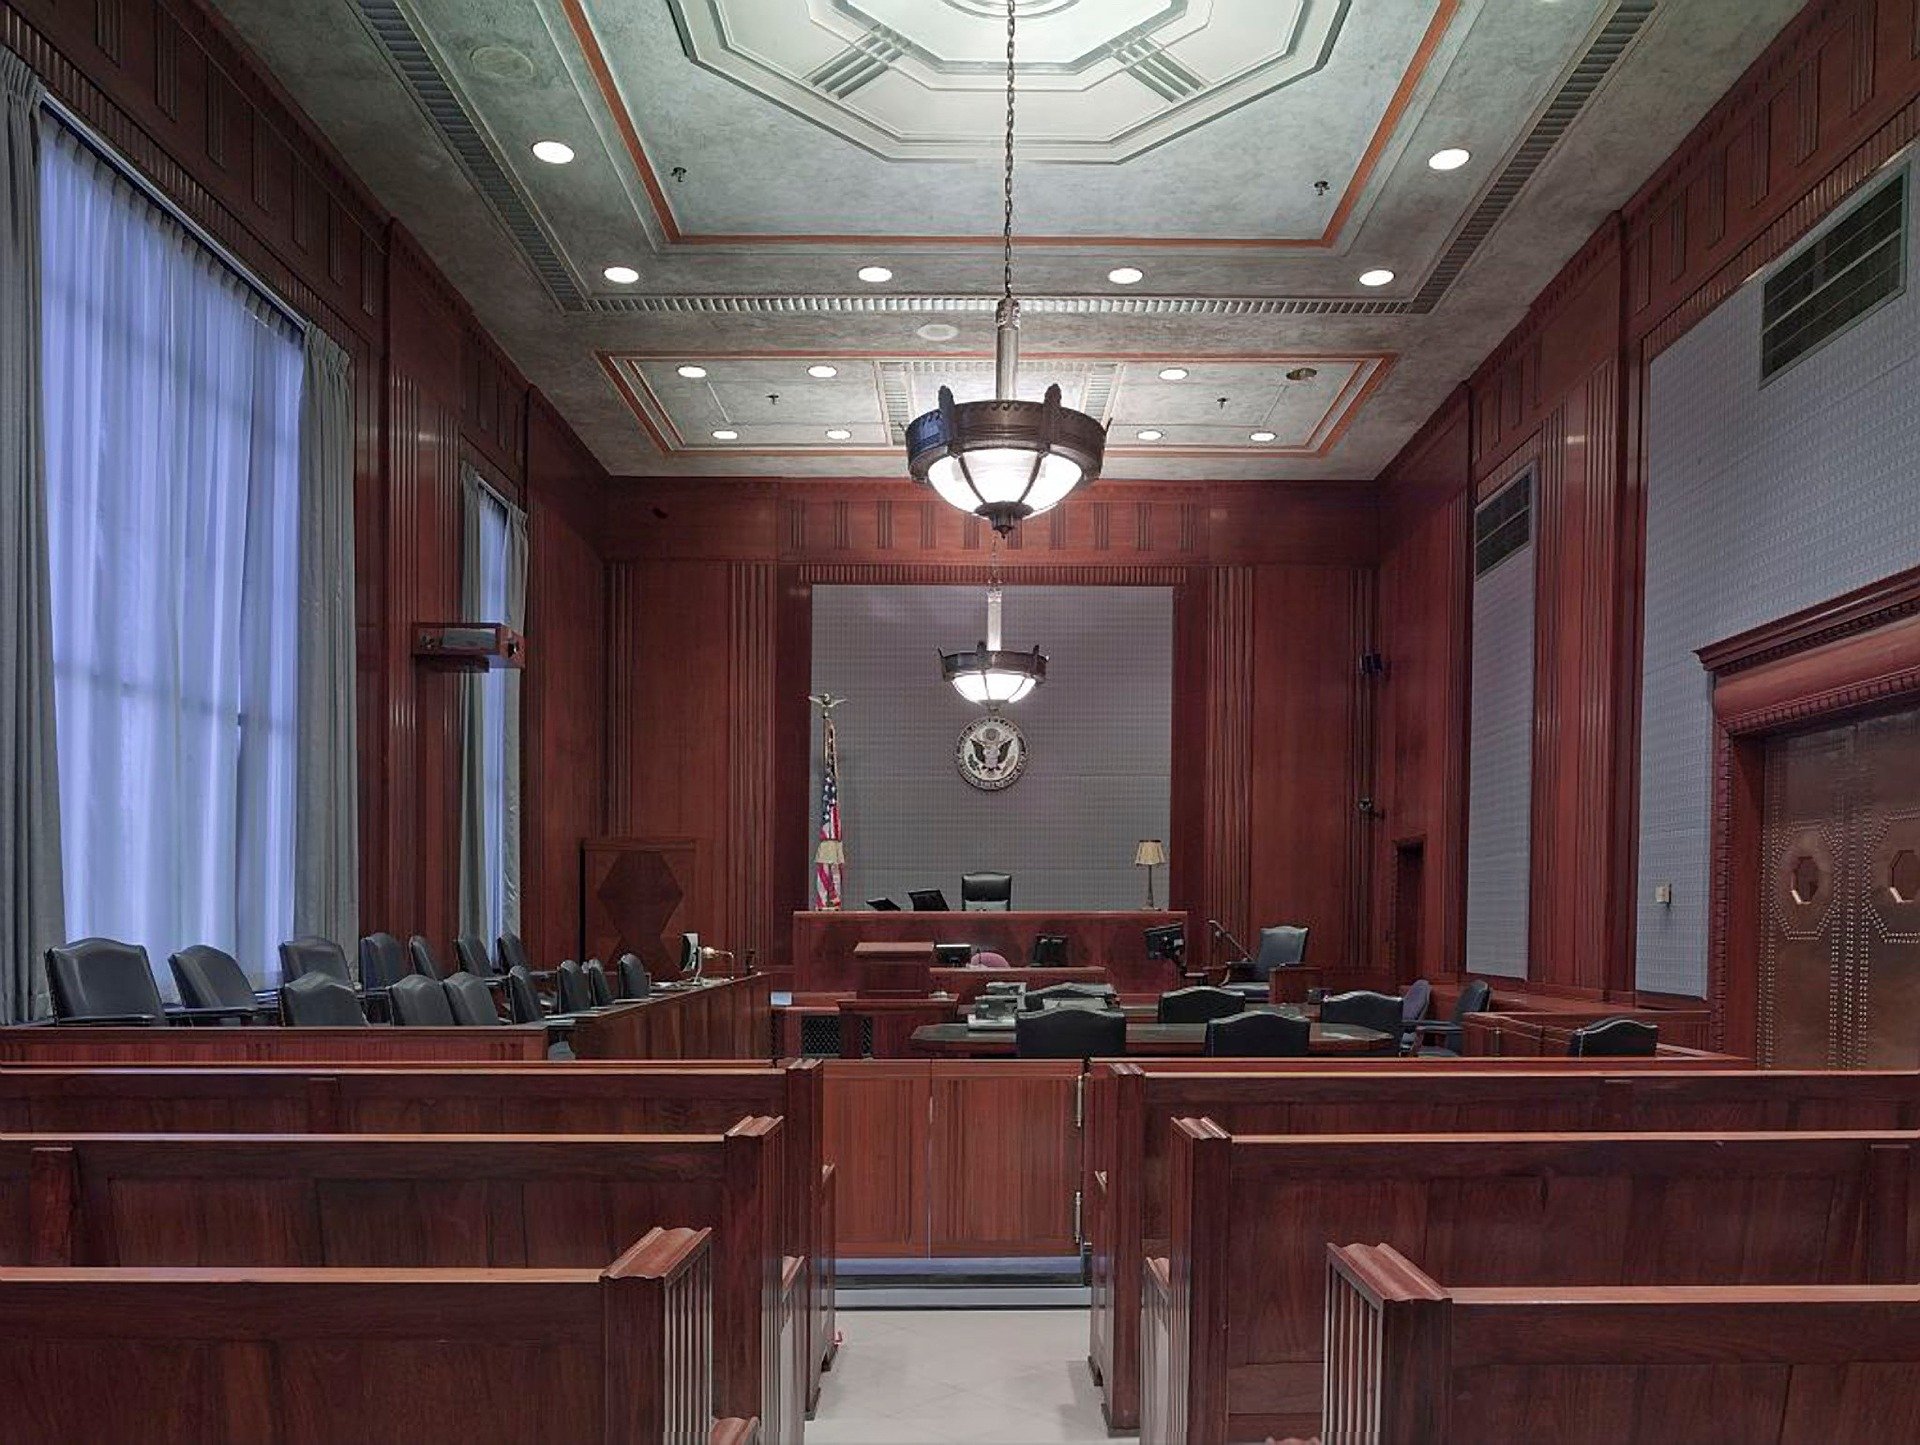 Inside a U.S. courtroom